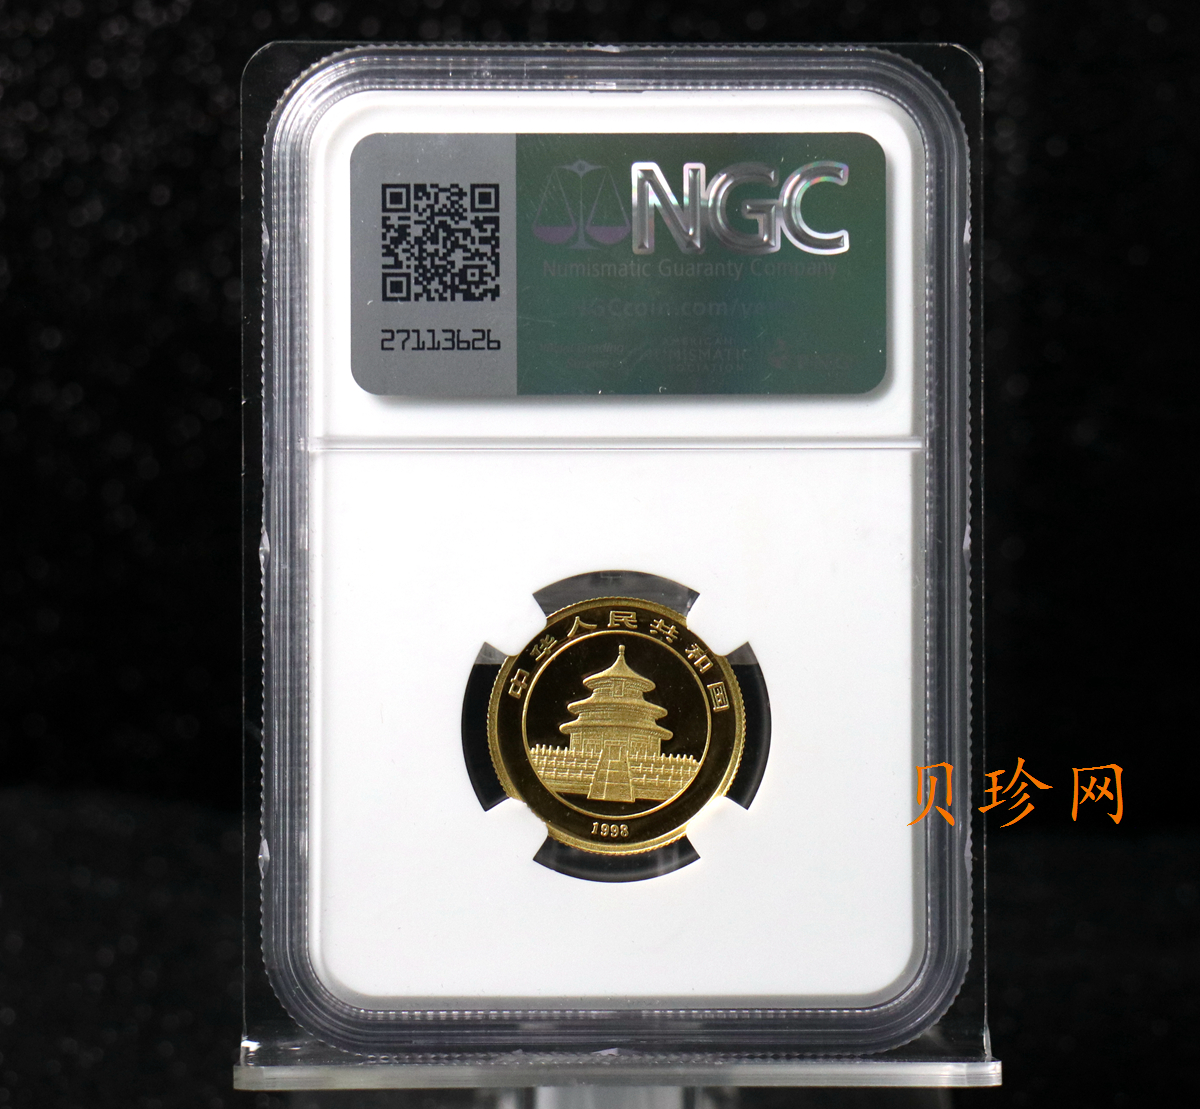 【980103】1998版熊猫金银纪念币1/4盎司普制金币